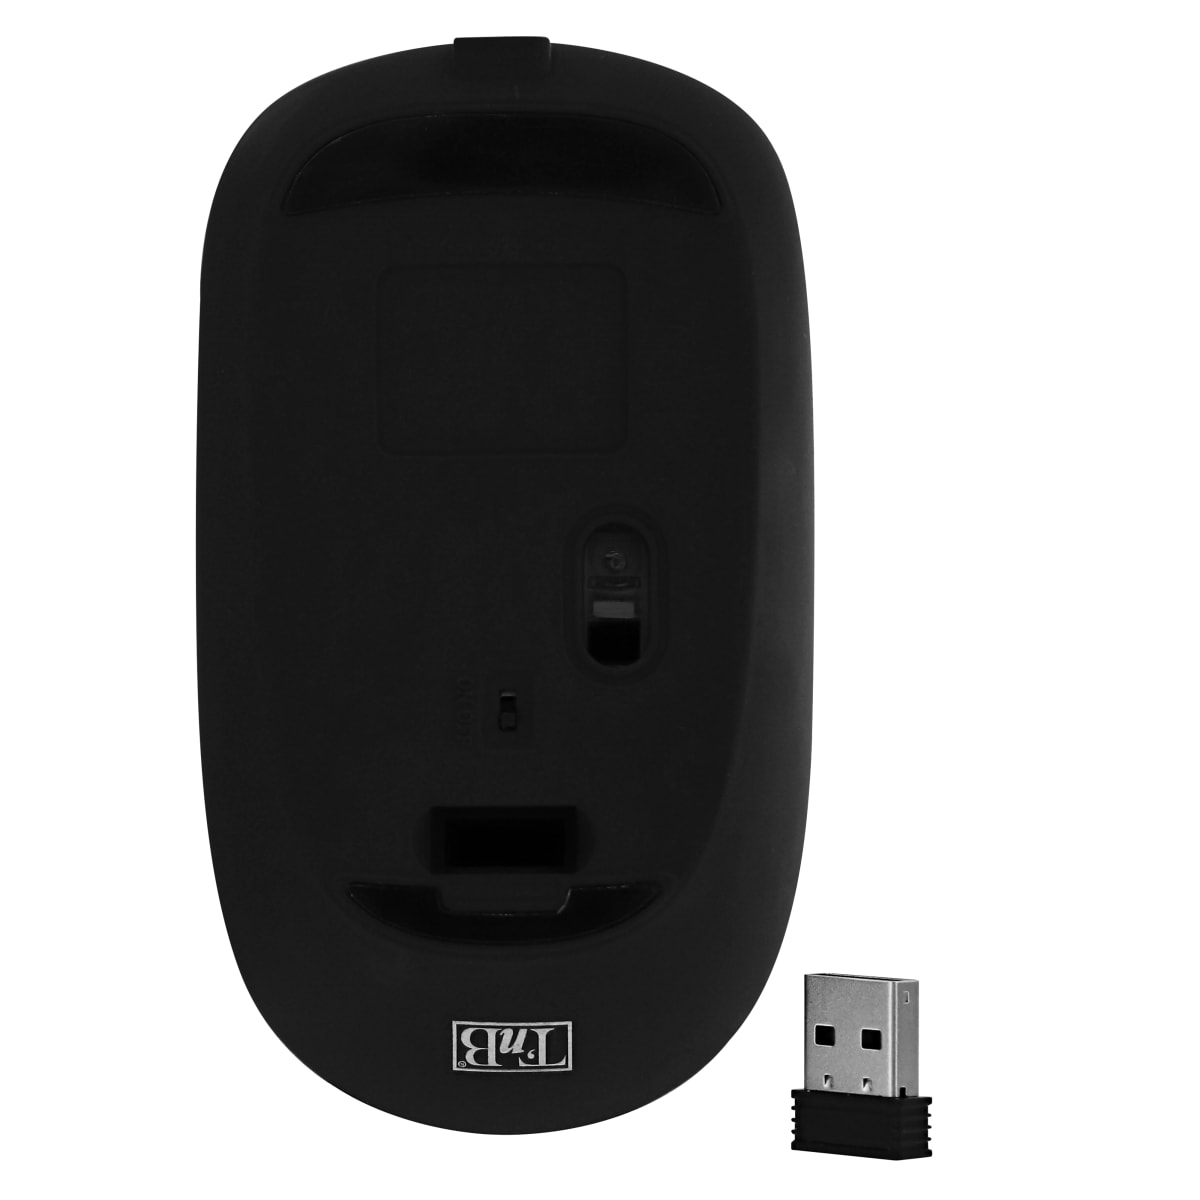 TNB Souris sans fil rechargeable silencieuse Rubby - USB - Noire